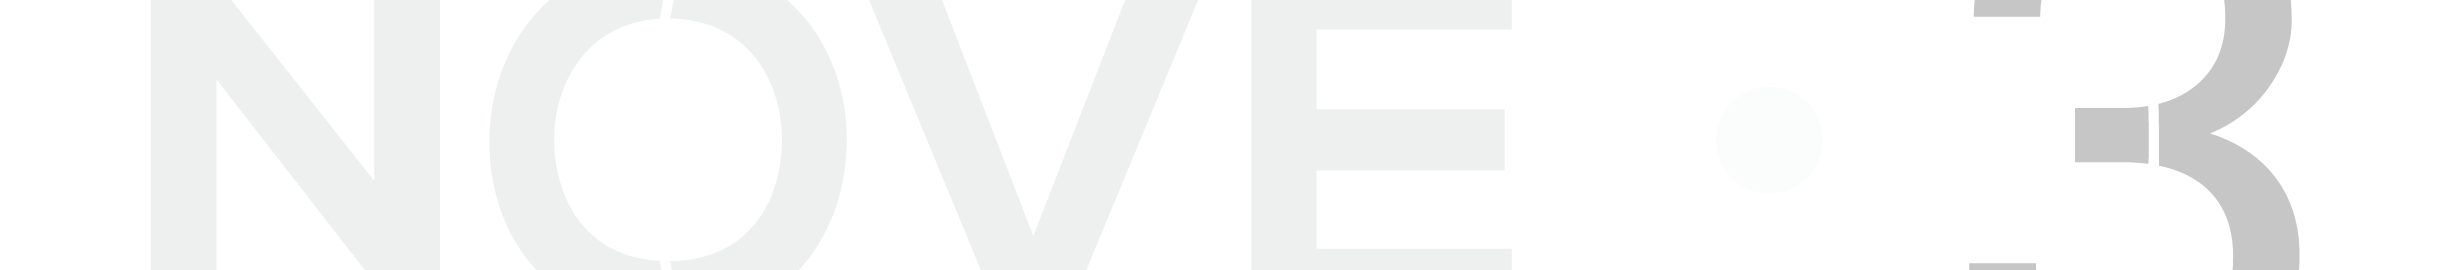 Nove.3 Design Studio's profile banner